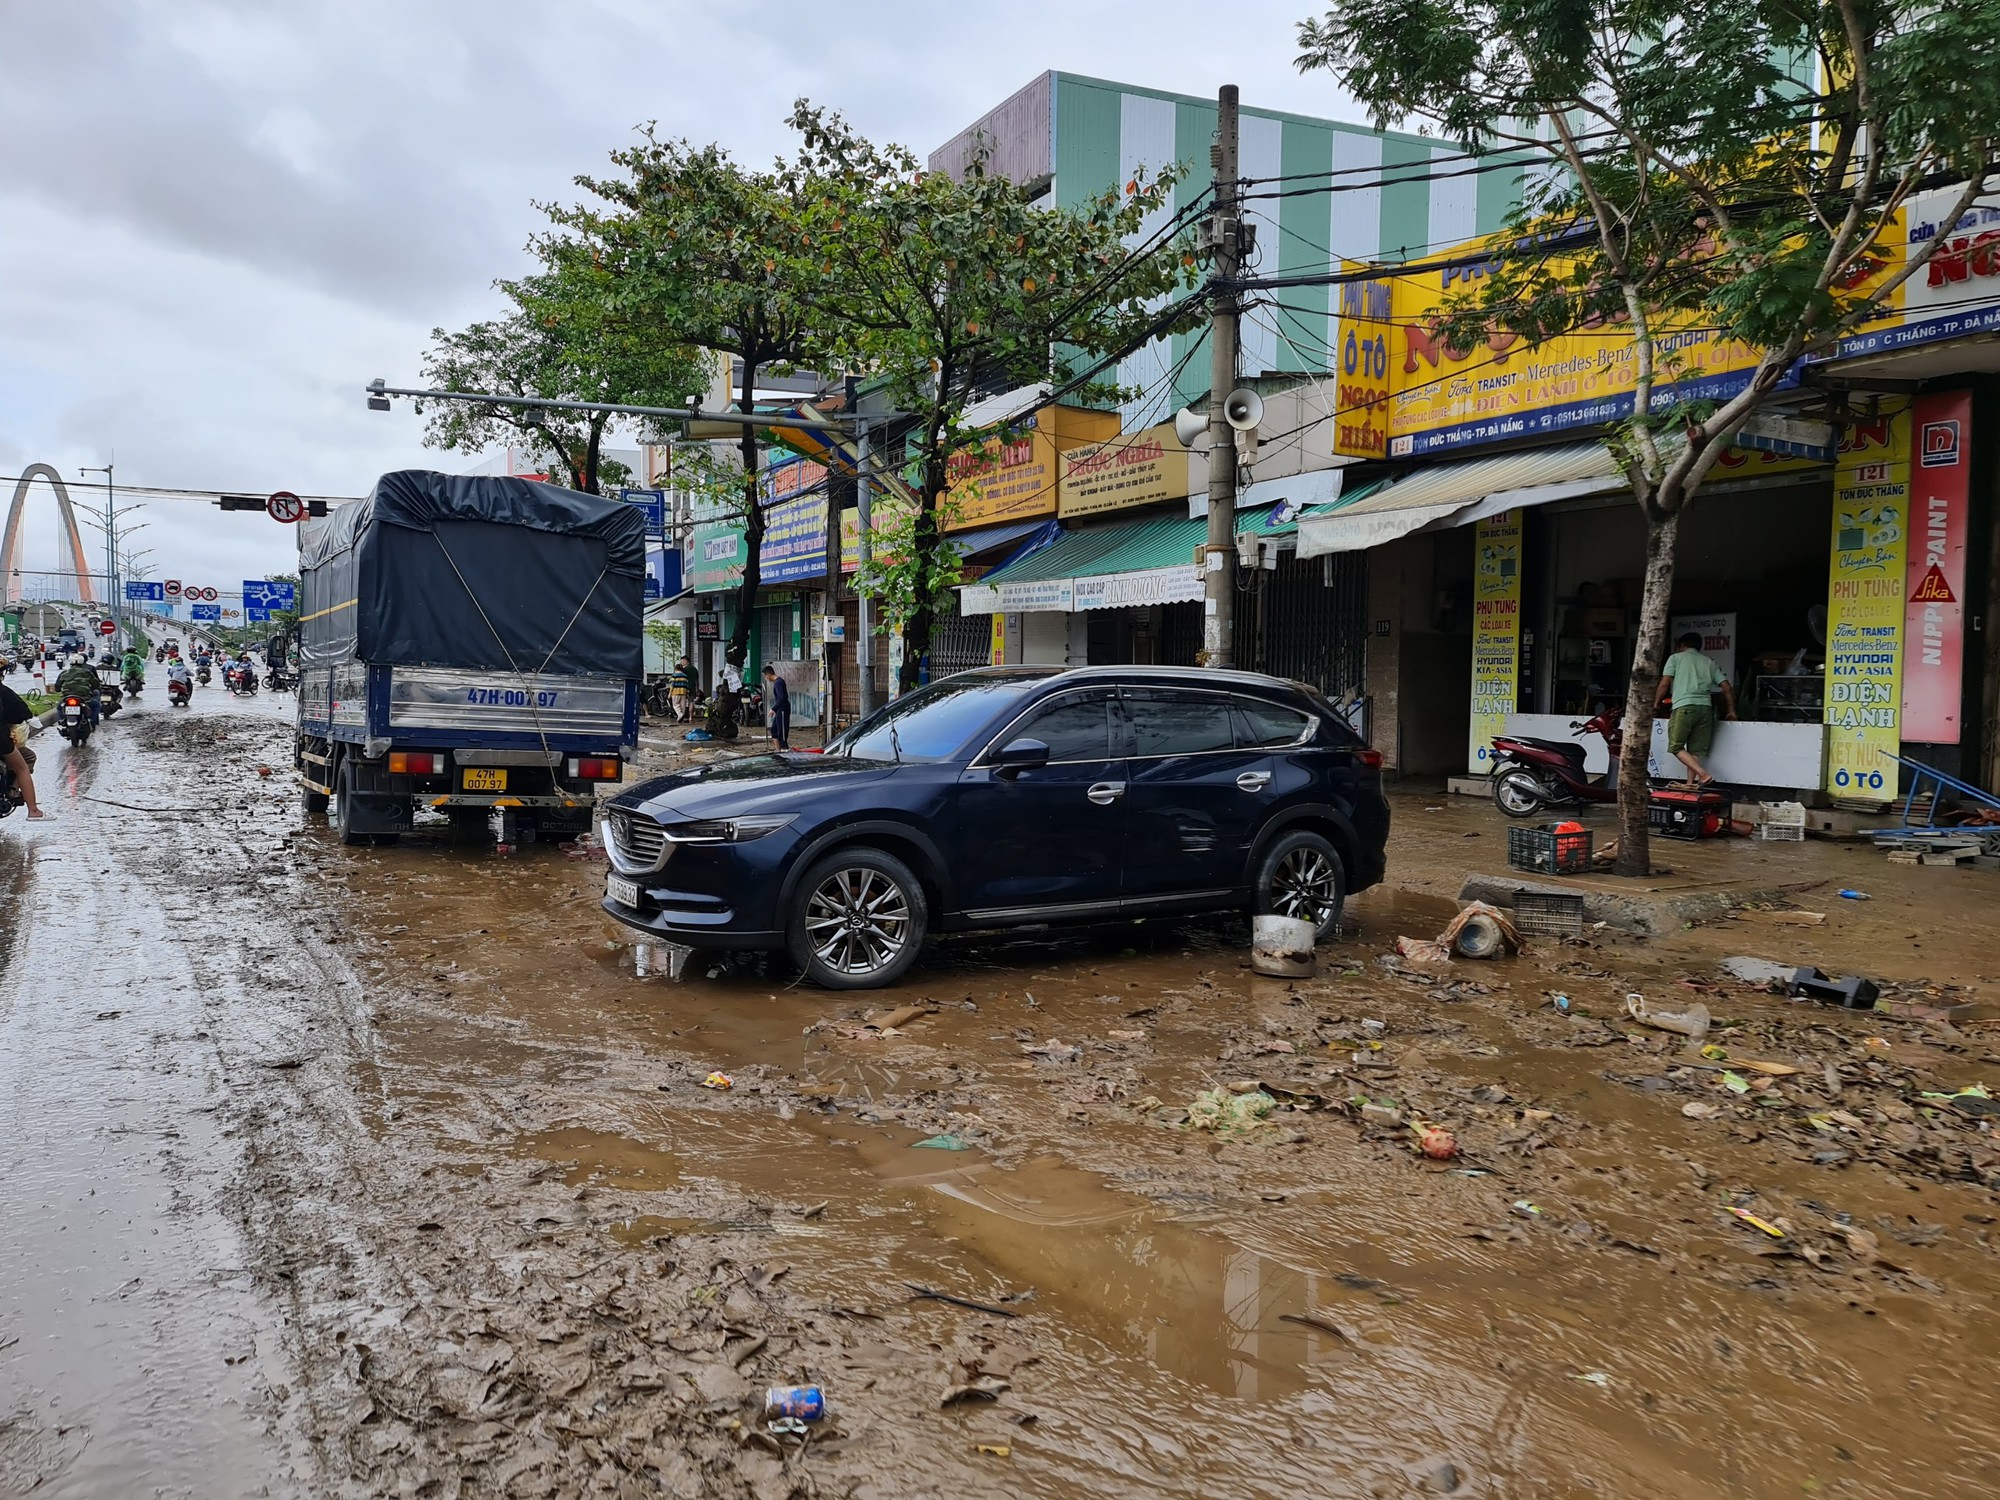 CLIP: Đà Nẵng sau trận mưa ngập lịch sử: Đường phố xơ xác, xe chết máy nằm la liệt... - Ảnh 4.